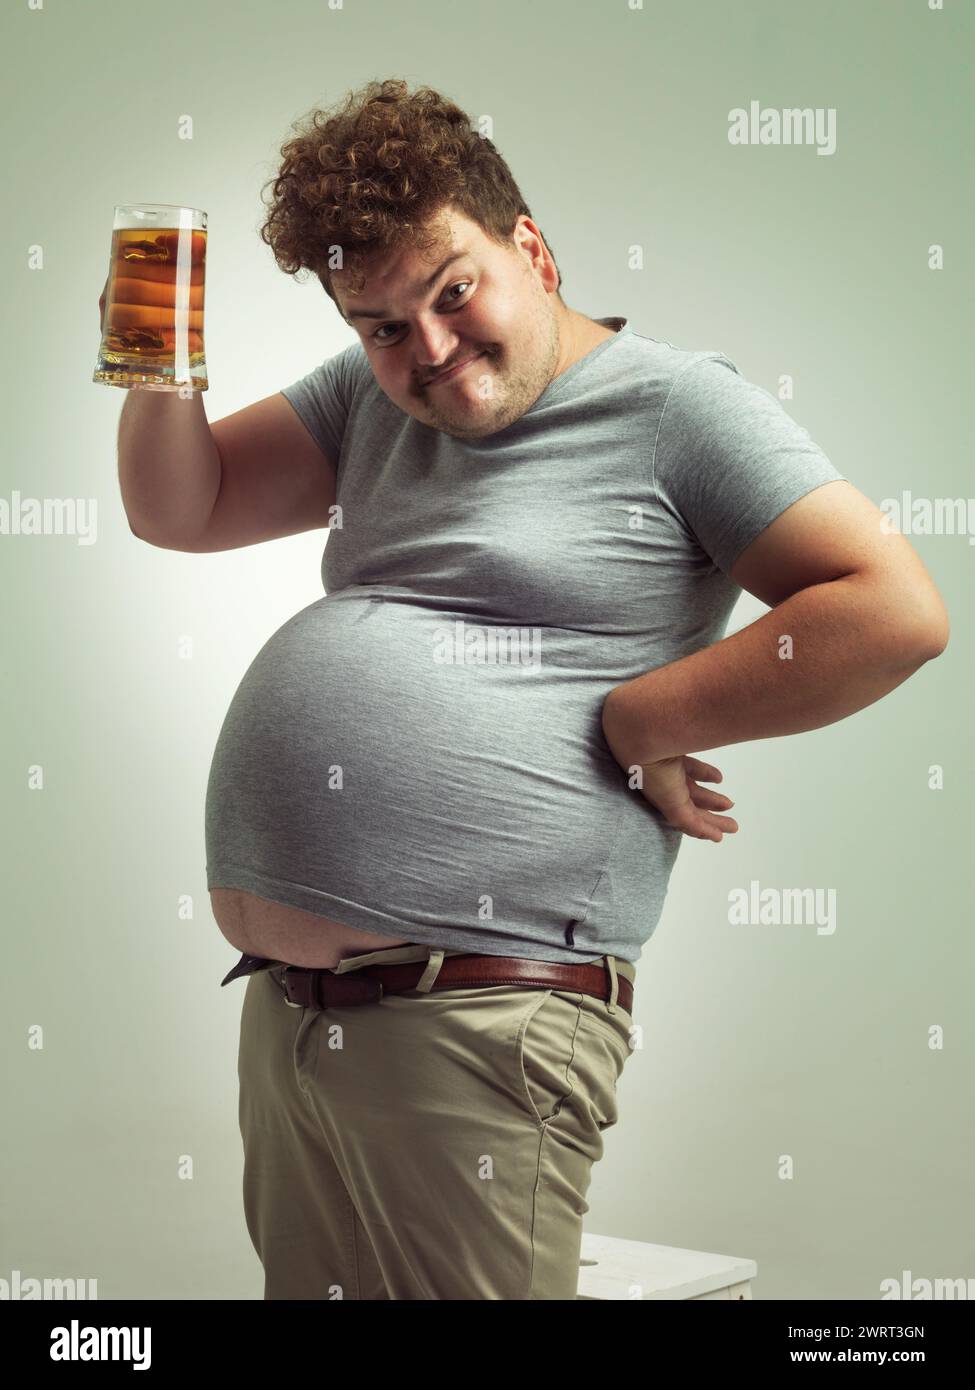 Obèse, gain de poids et bière pour homme en studio avec de l'alcool pour les habitudes malsaines, plus la taille et l'humour. Personne en surpoids avec verre à la main et graisse Banque D'Images